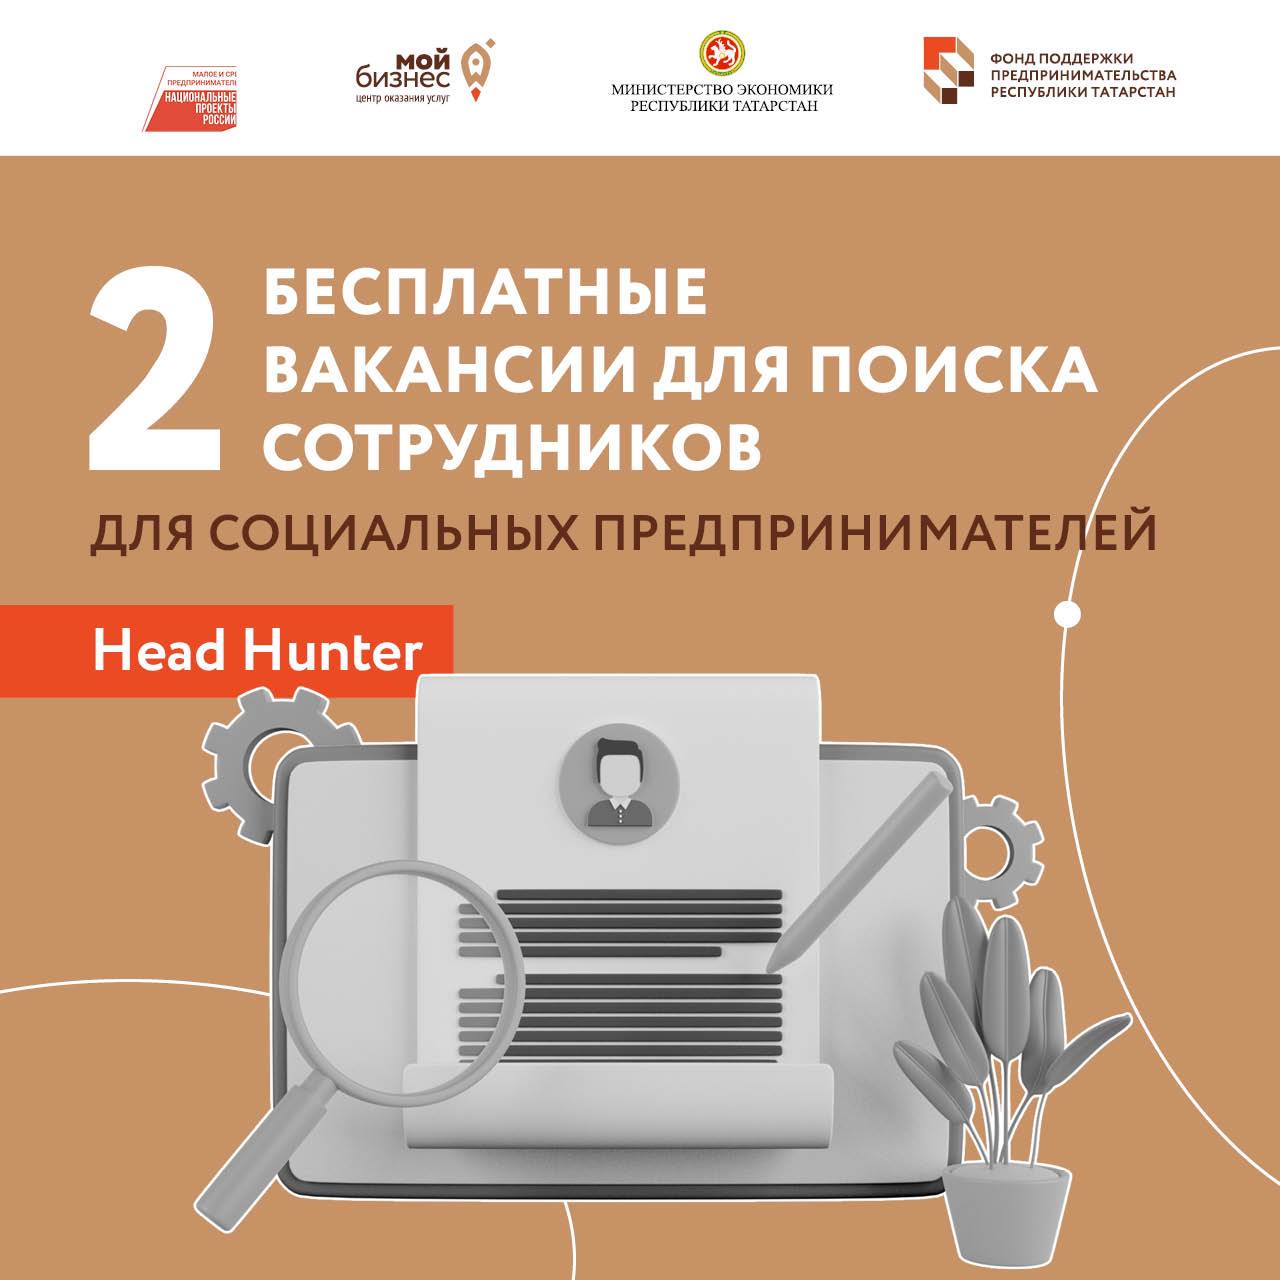 Программа помощи соцбизнесу от одной из крупнейших российских платформ поиска работы и сотрудников hh.ru!